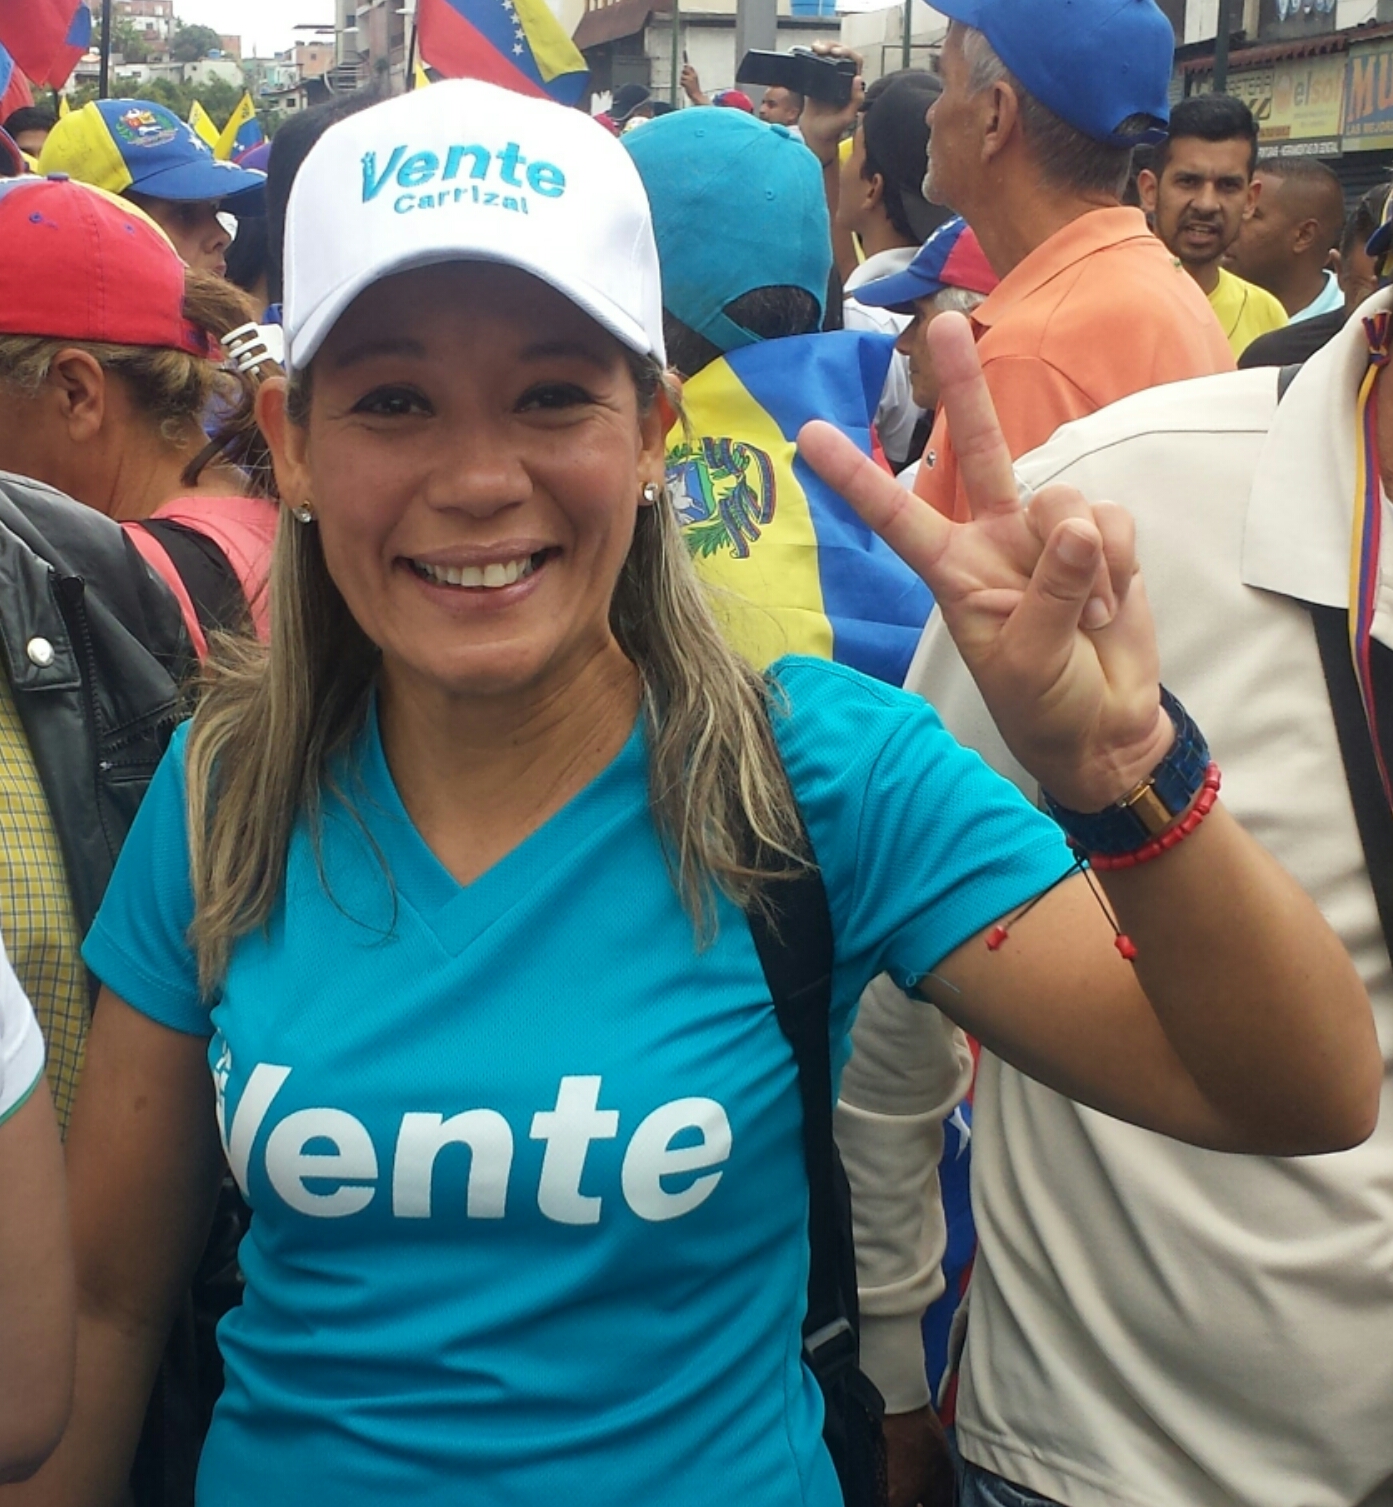 Aspiración del venezolano: Acuñar el liberalismo  – Por Carolina Márquez